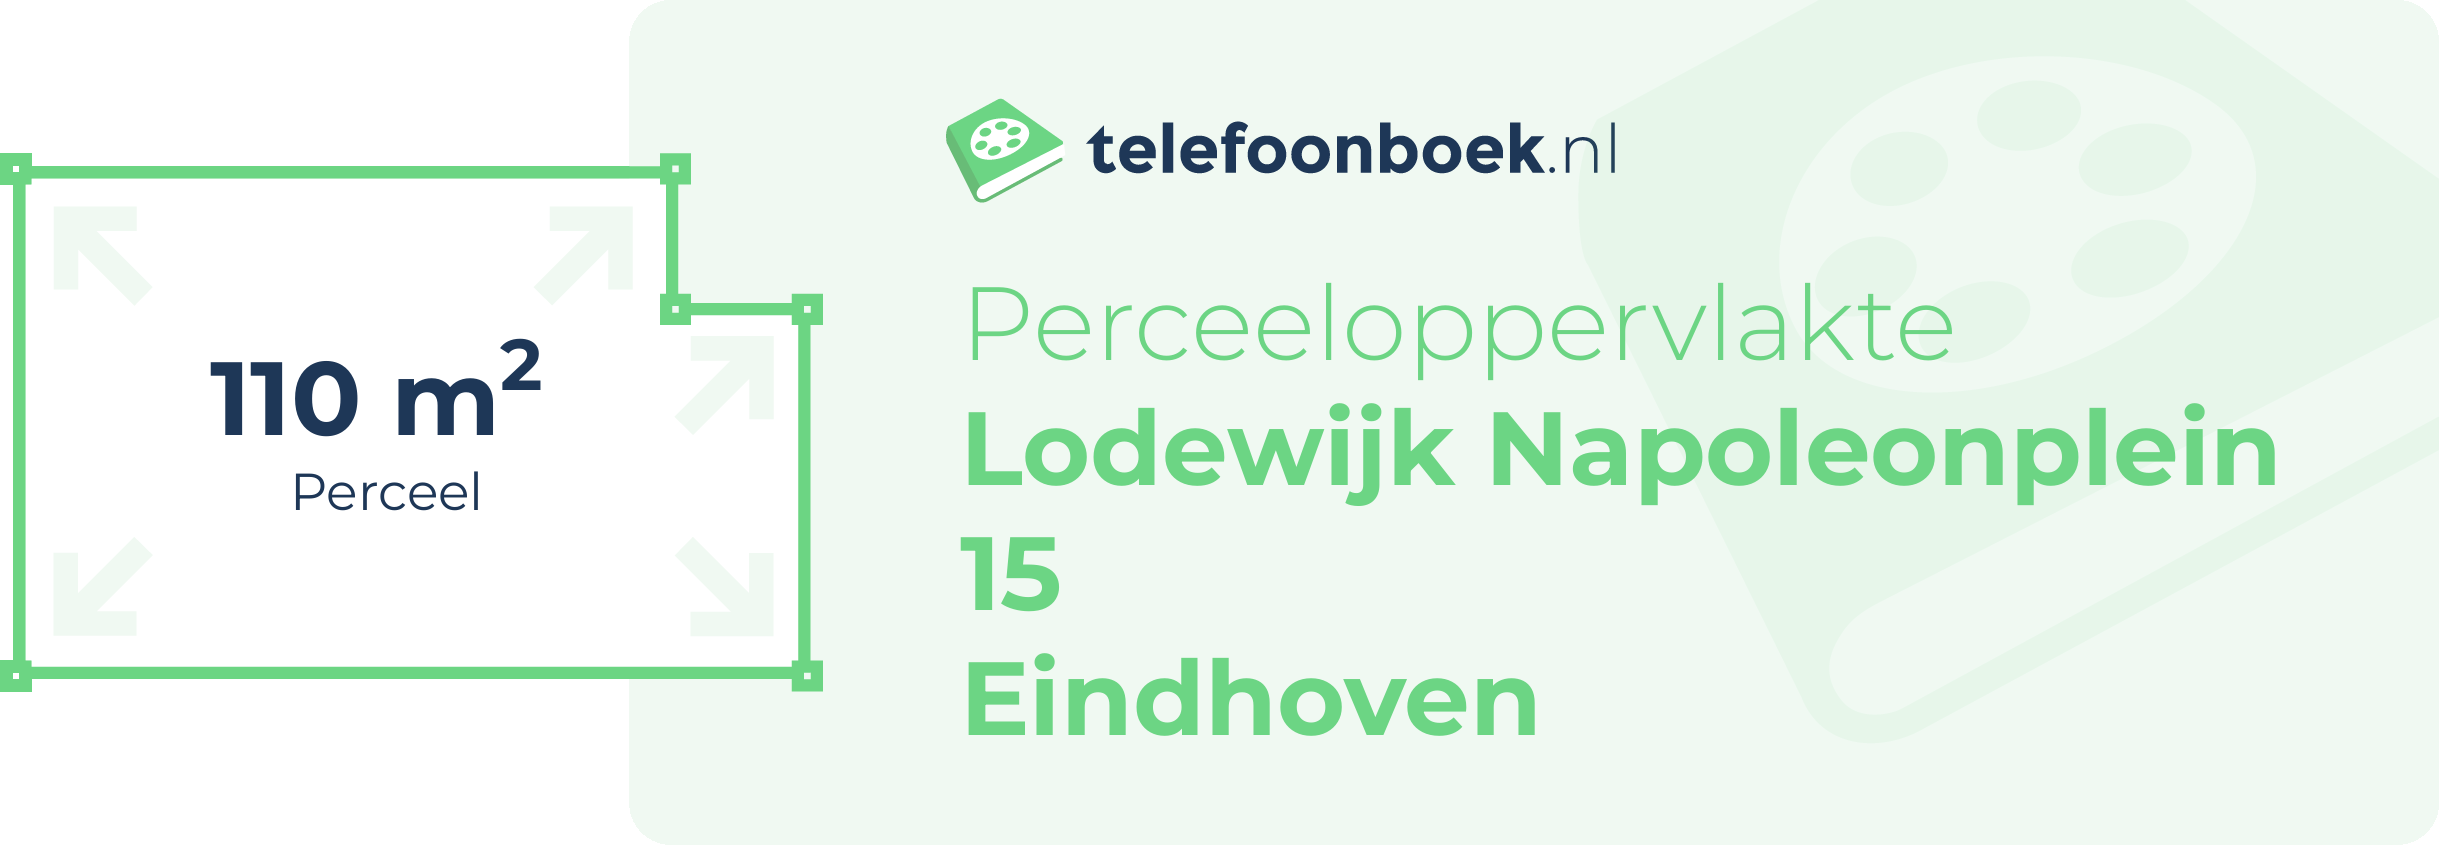 Perceeloppervlakte Lodewijk Napoleonplein 15 Eindhoven